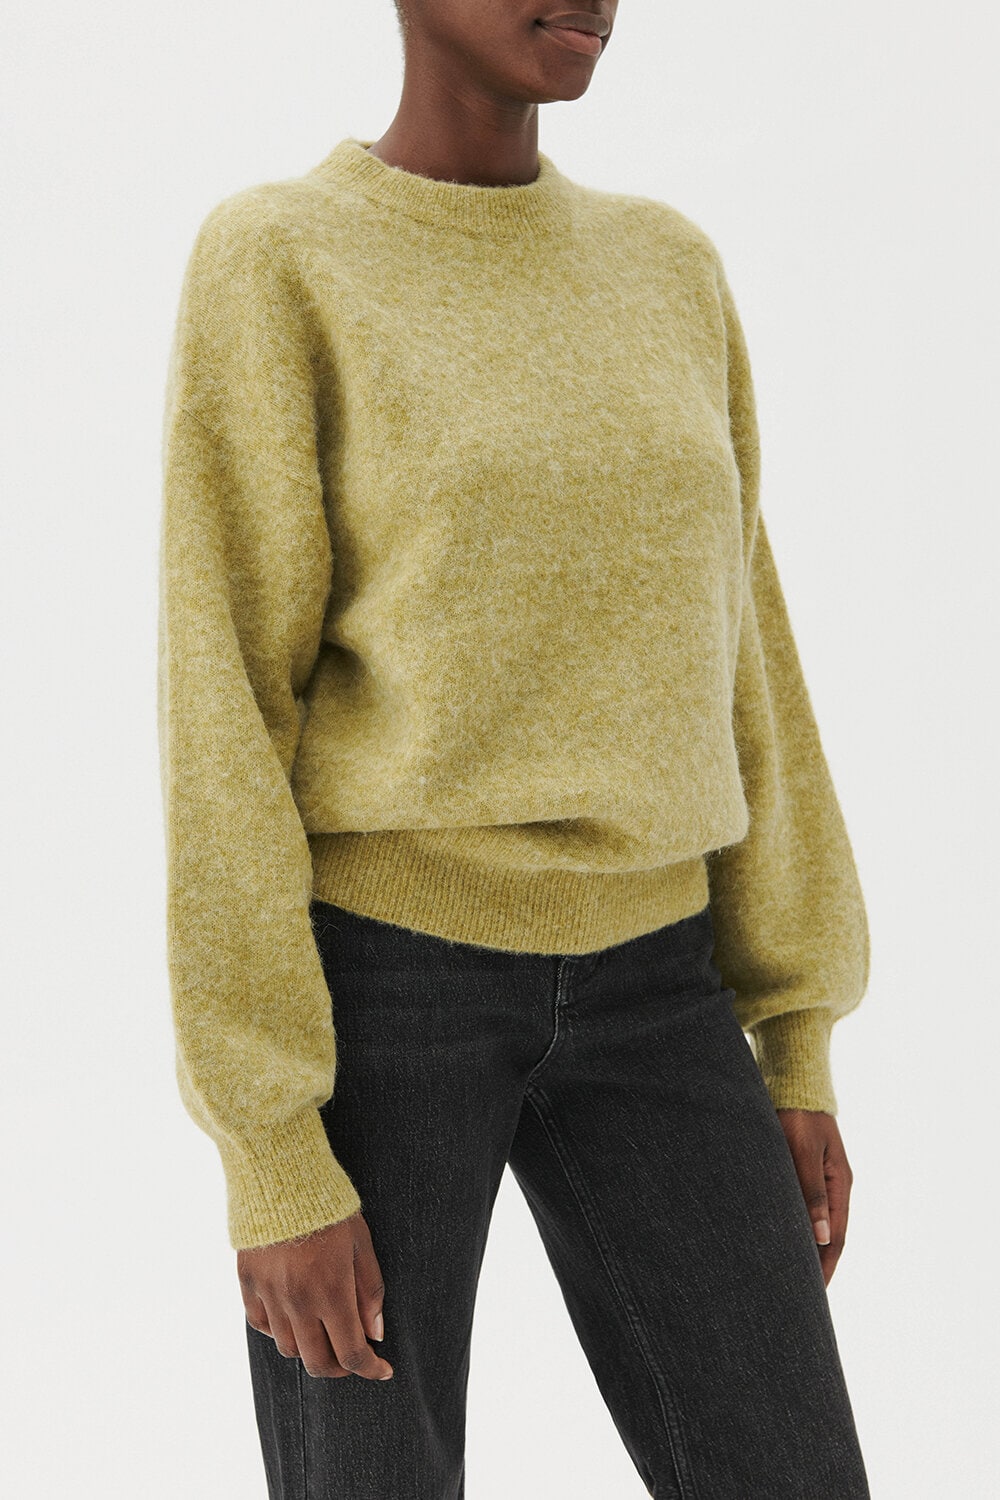 Zanna Sweater